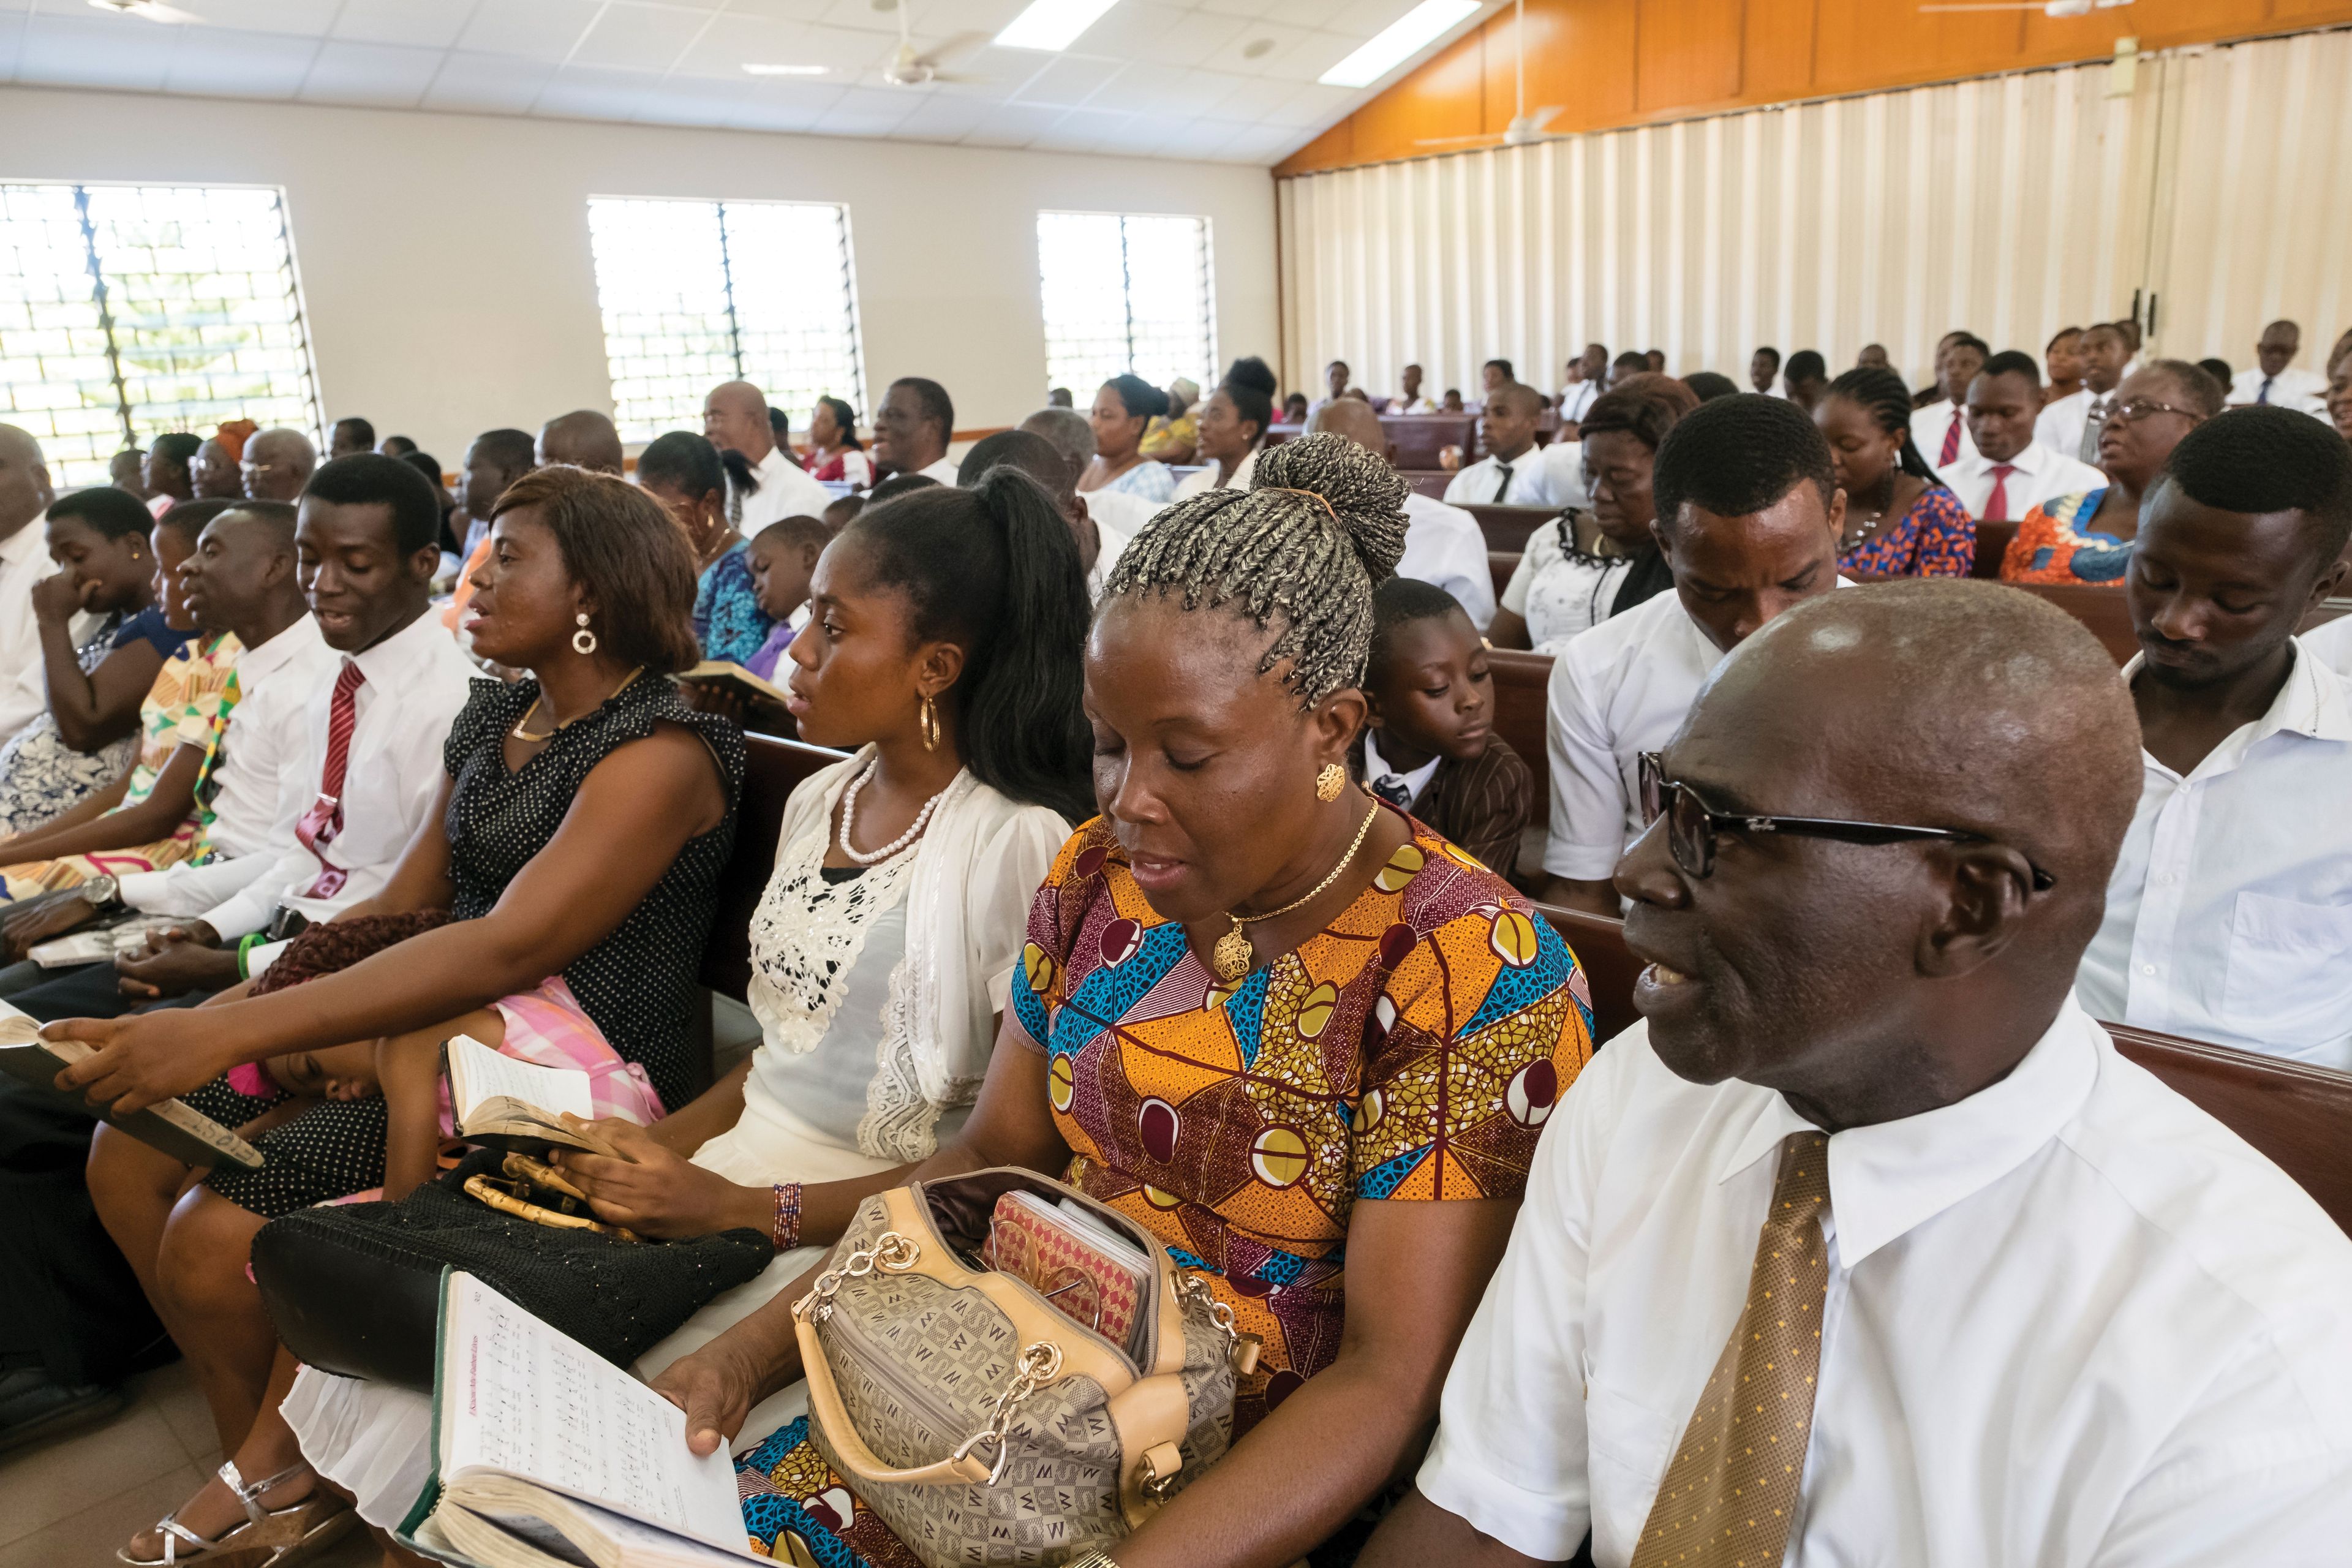 Members singing in a sacrament meeting in Ghana, Africa.